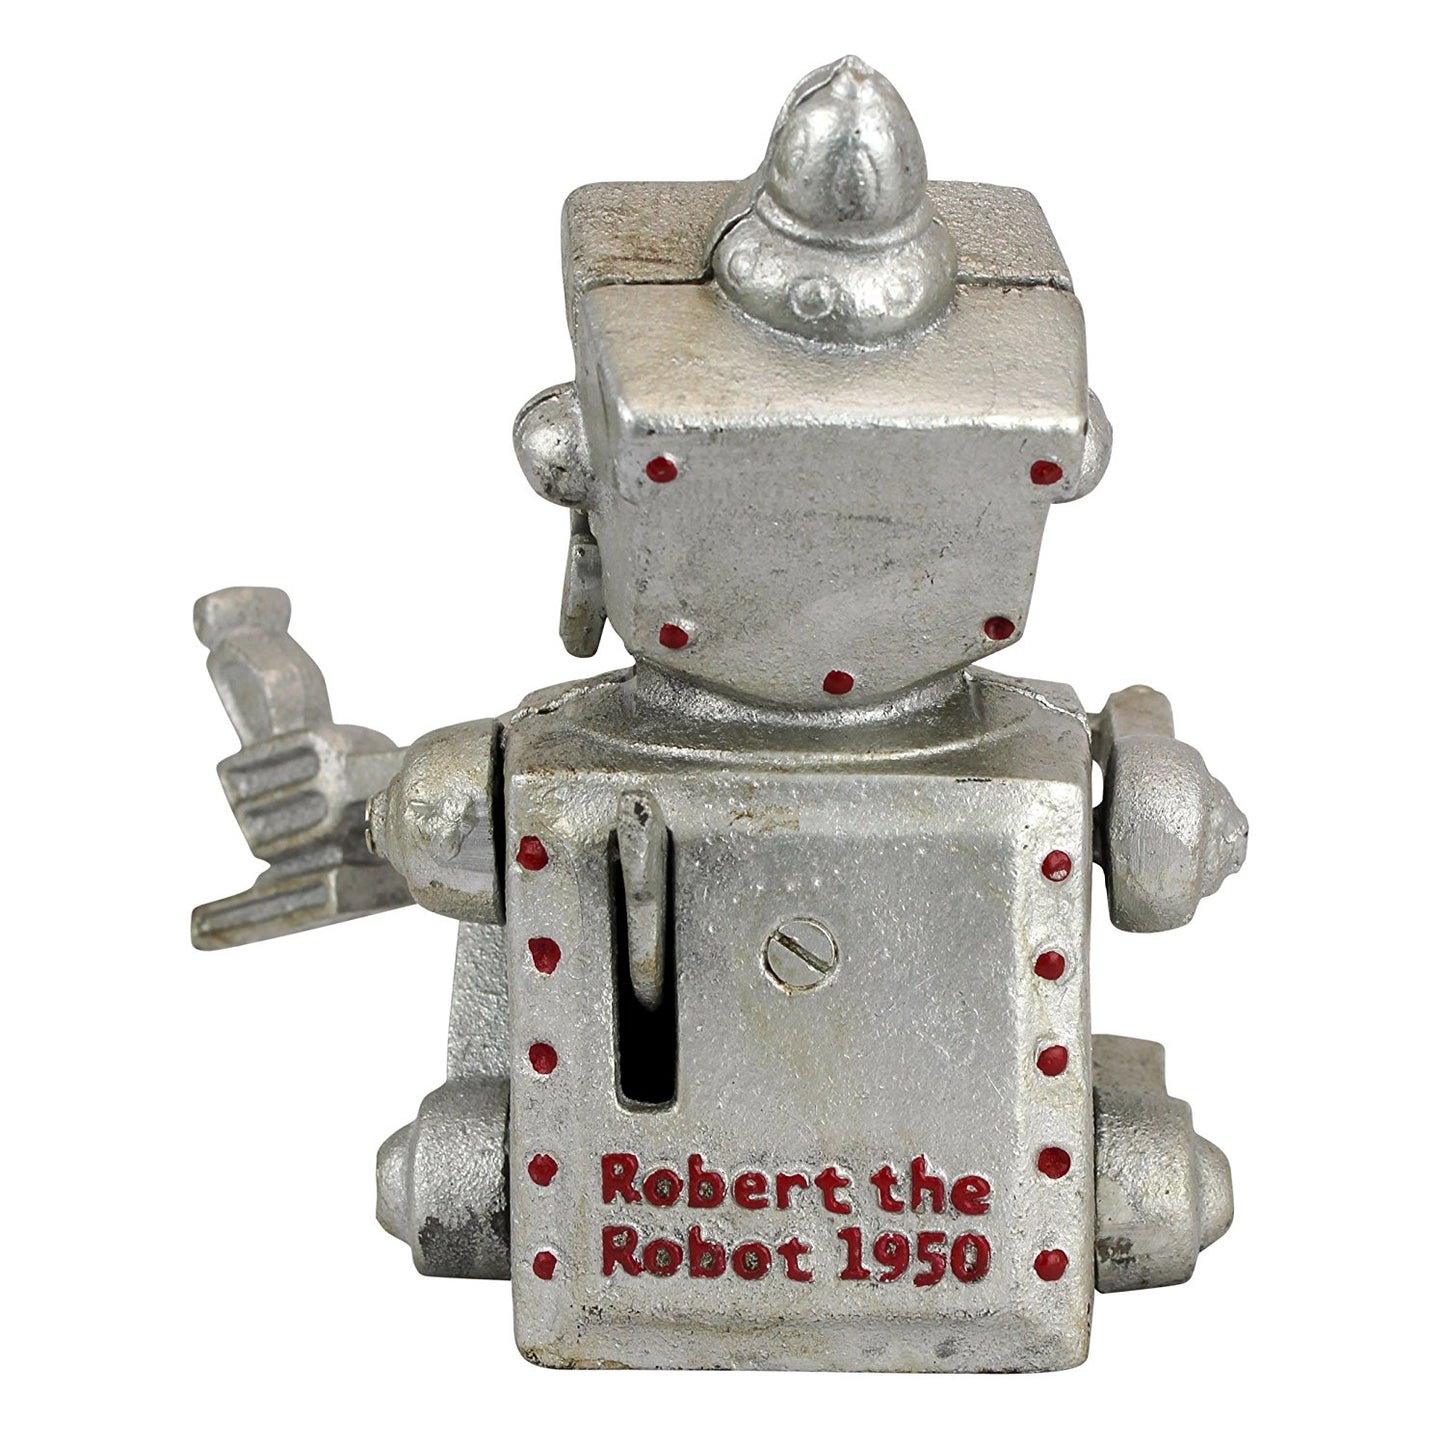 Robert the Robot Mechanical Bank